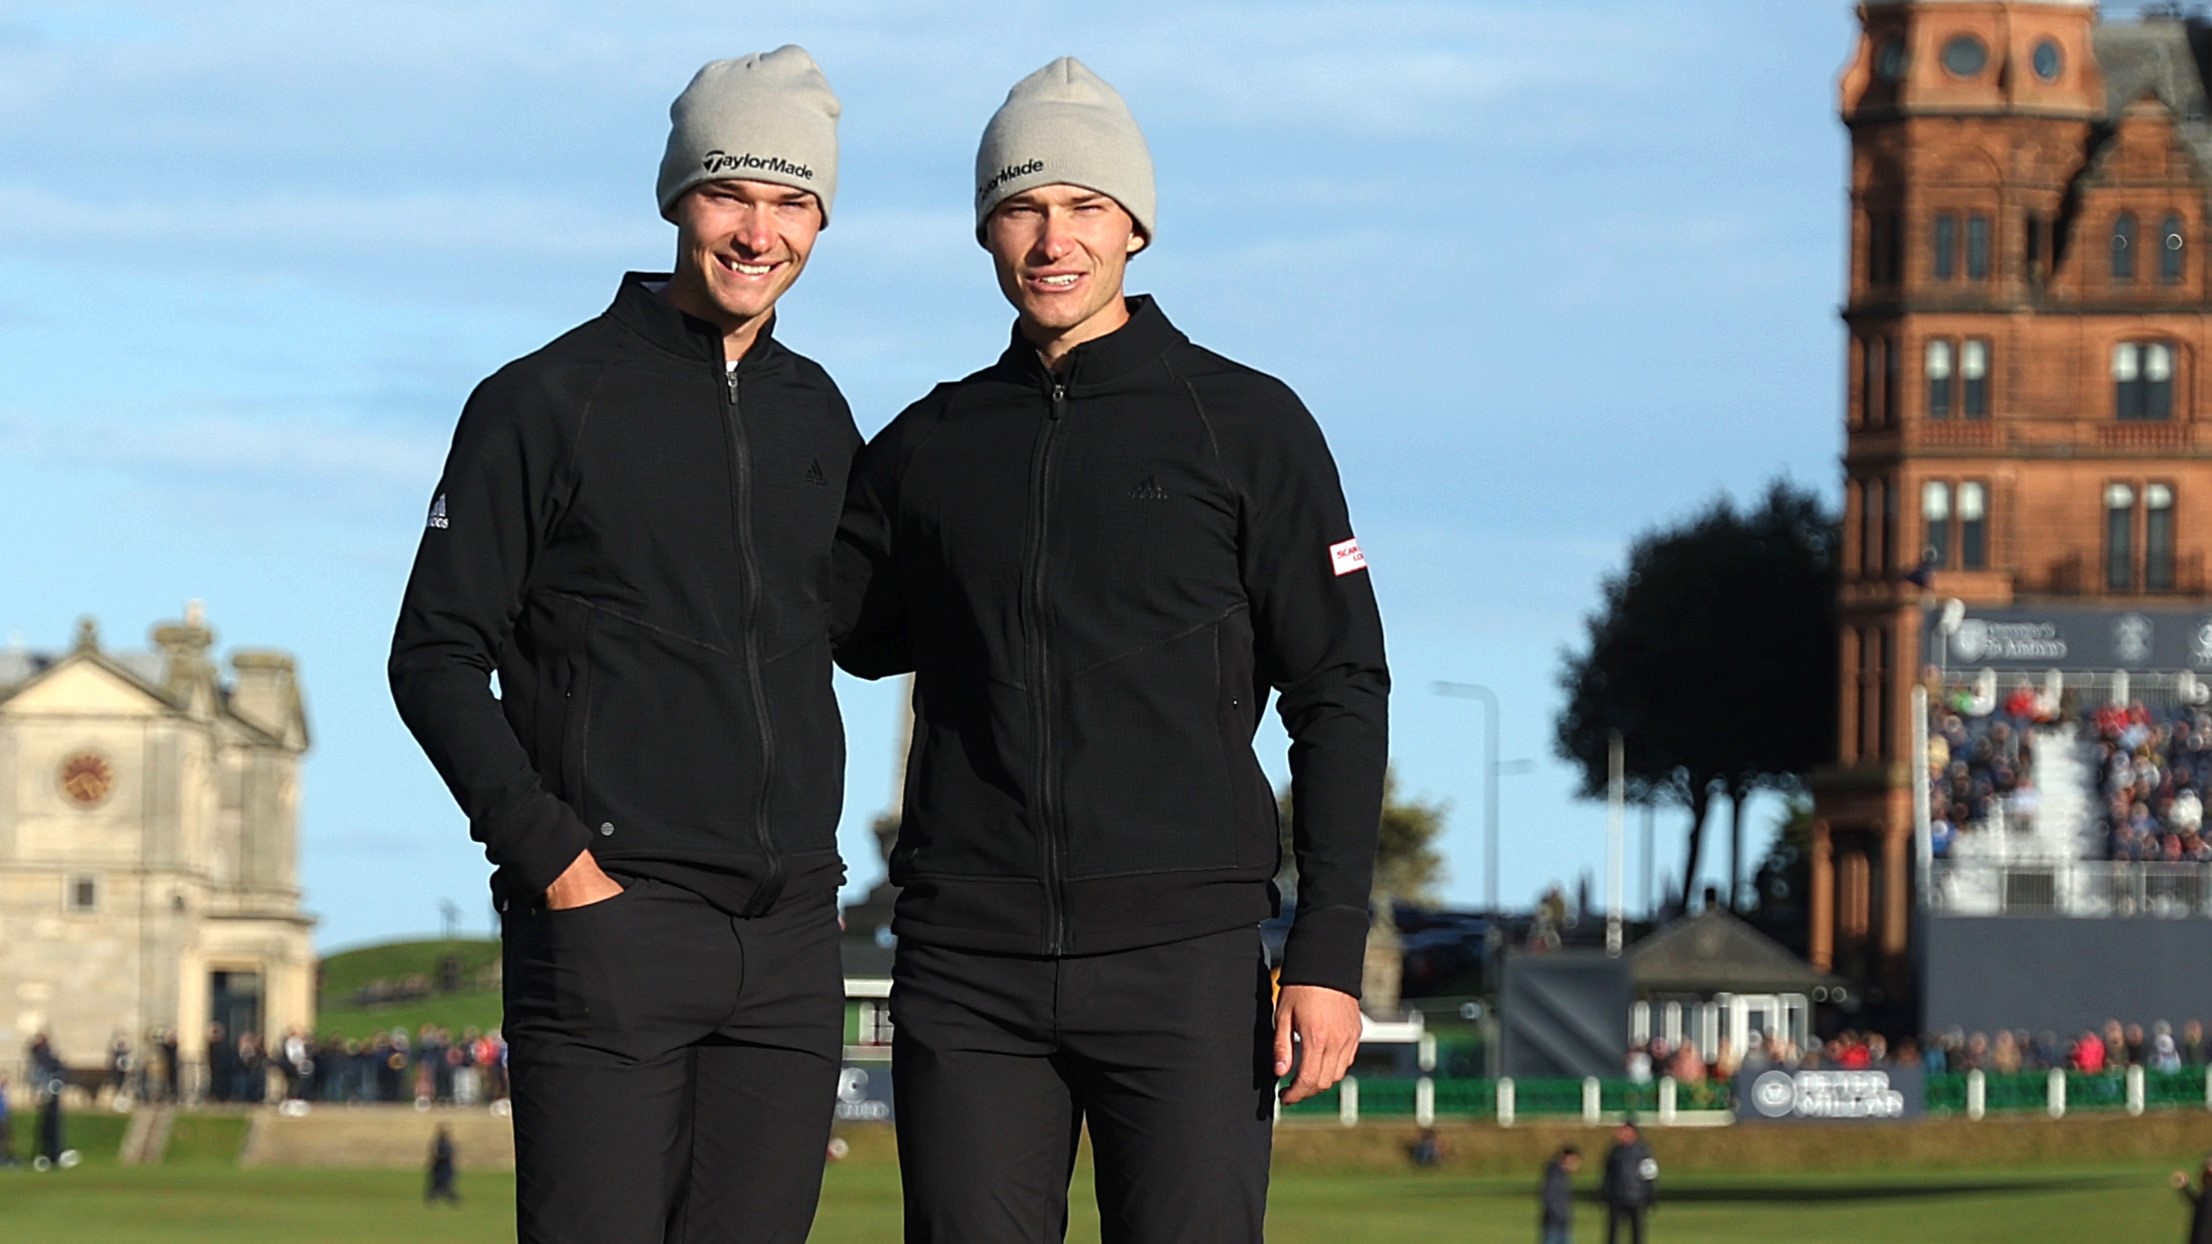 Sie sind aktuell die erfolgreichsten Zwillinge auf der Tour: Rasmus und Nicolai Højgaard aus Dänemark. © Richard Heathcote/Getty Images